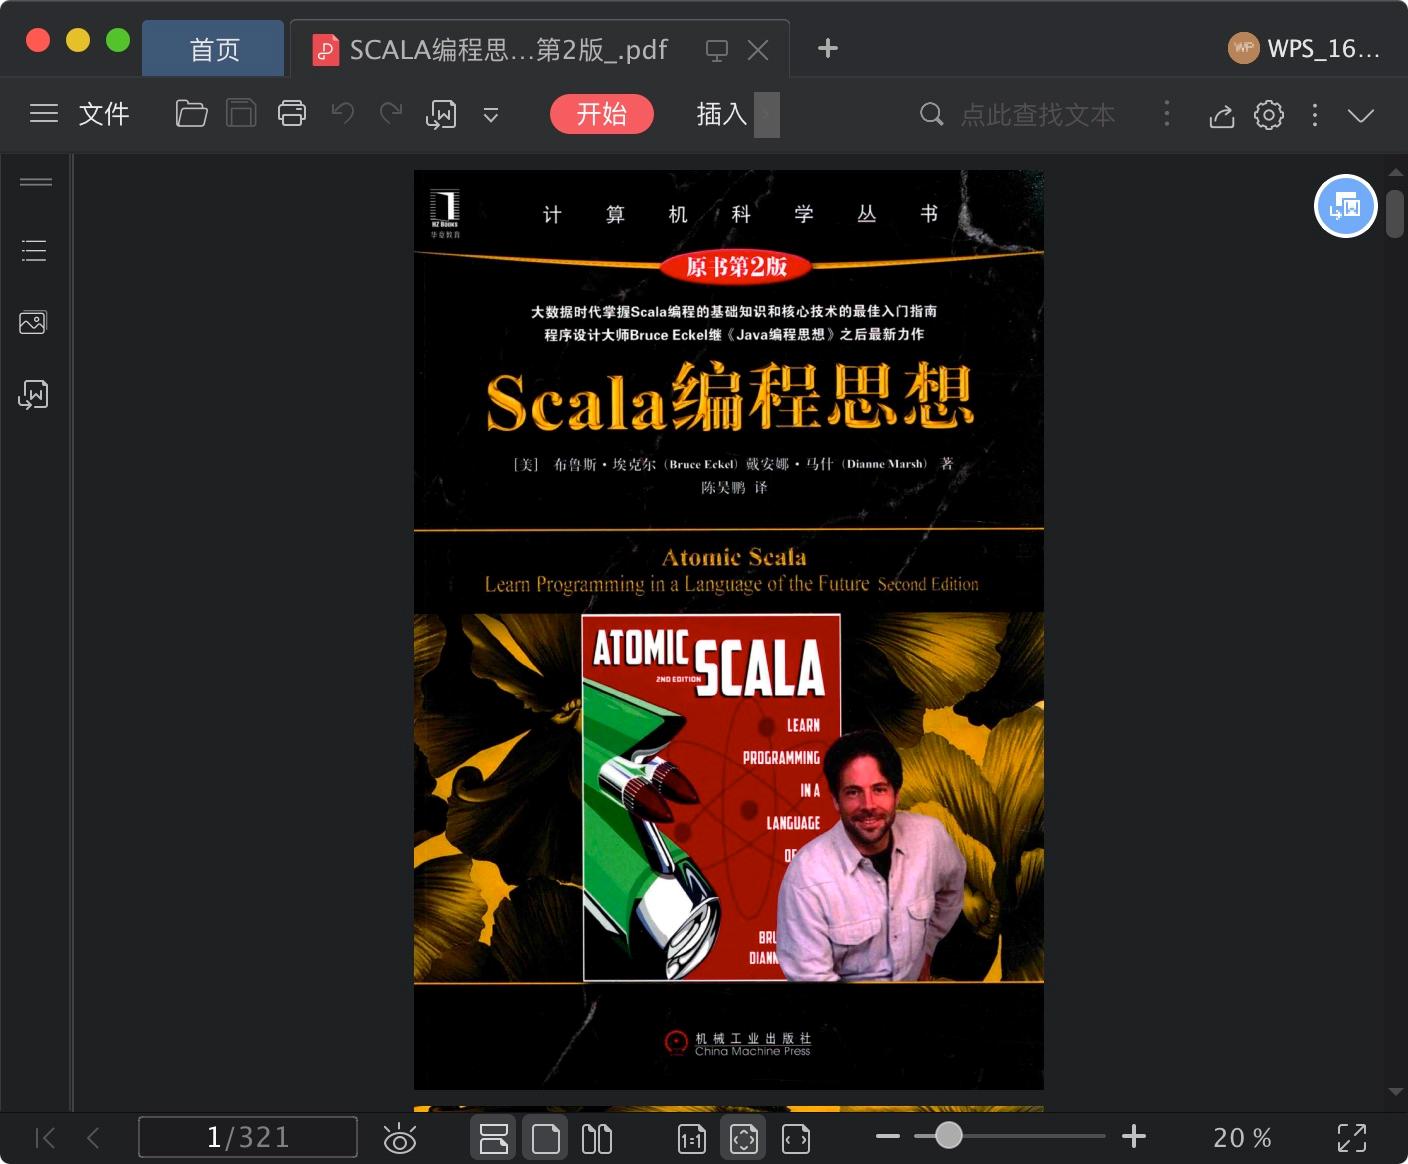 SCALA编程思想 原书第2版pdf电子书籍下载百度网盘